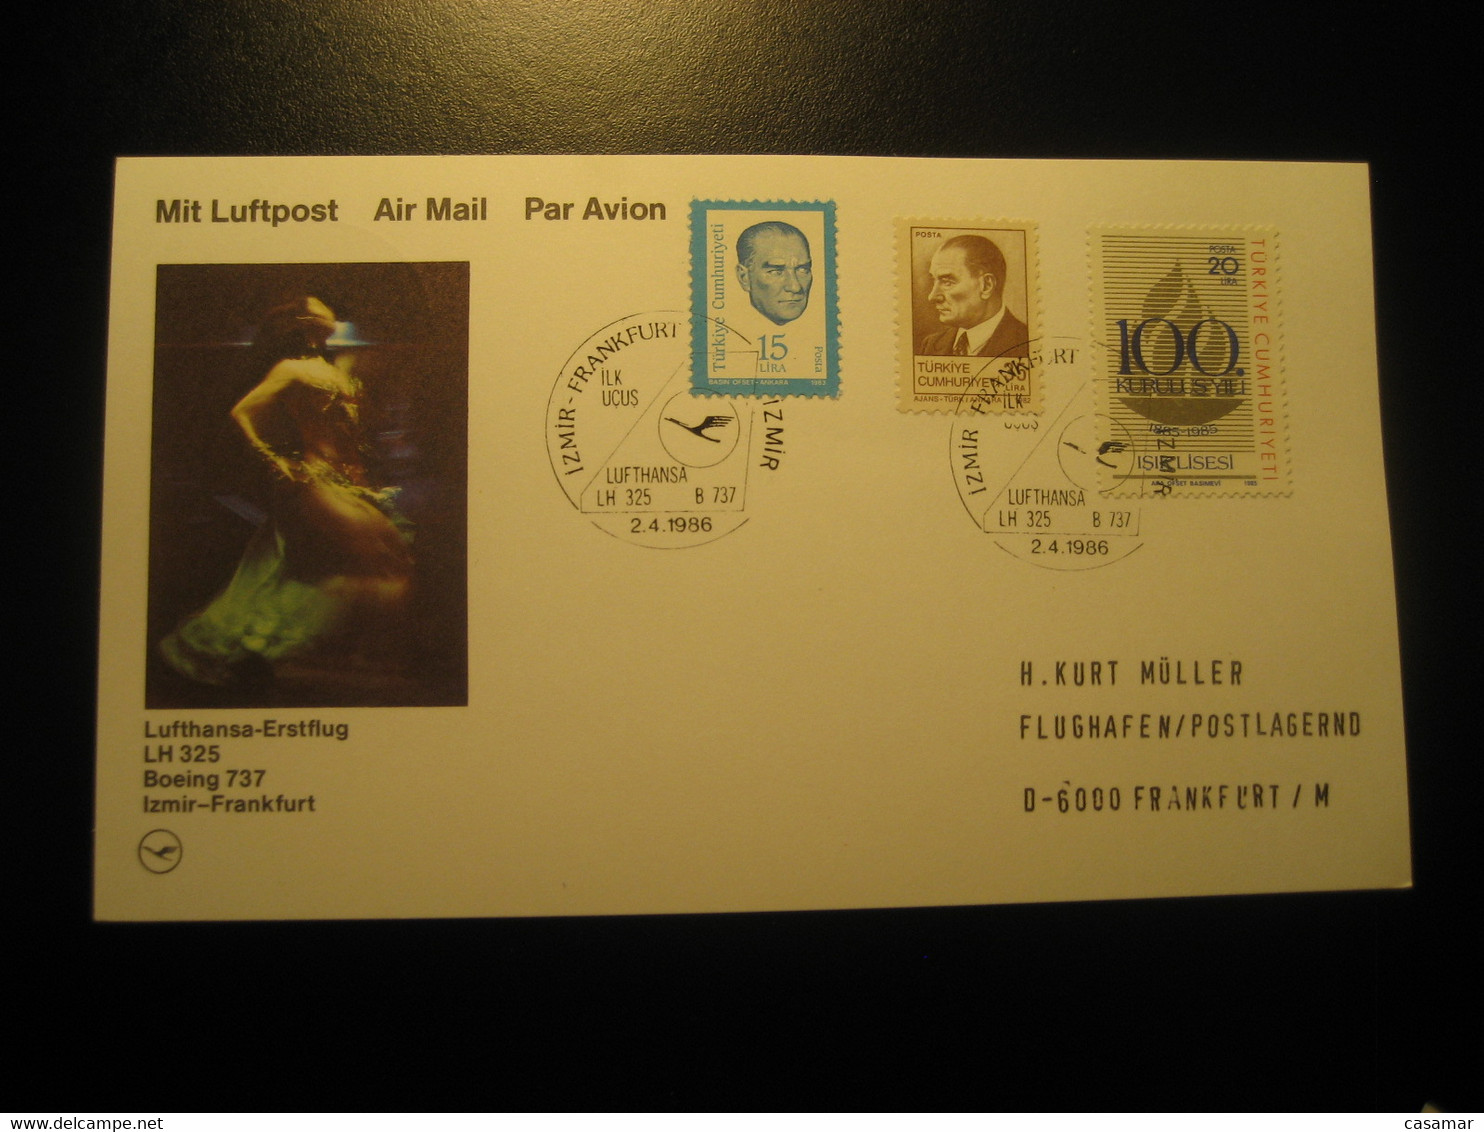 Izmir Frankfurt 1986 Lufthansa Airline Boeing 737 First Flight 3 Stamp Cancel Card Turkey Germany - Luftpost